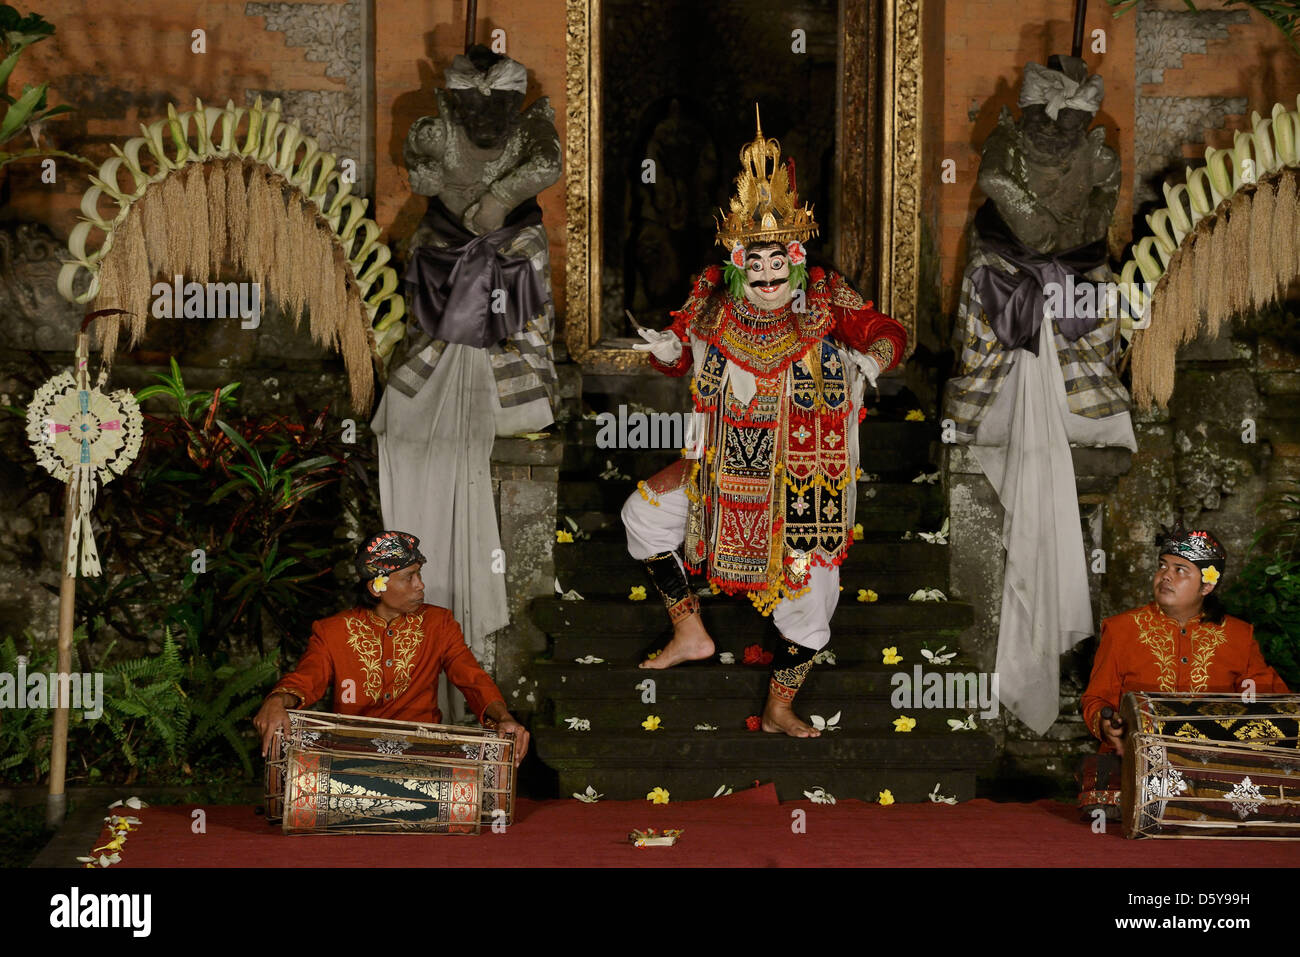 Indonesie Asie Bali Ubud danza y teatro tradicional en el templo de Puri Saren Foto de stock